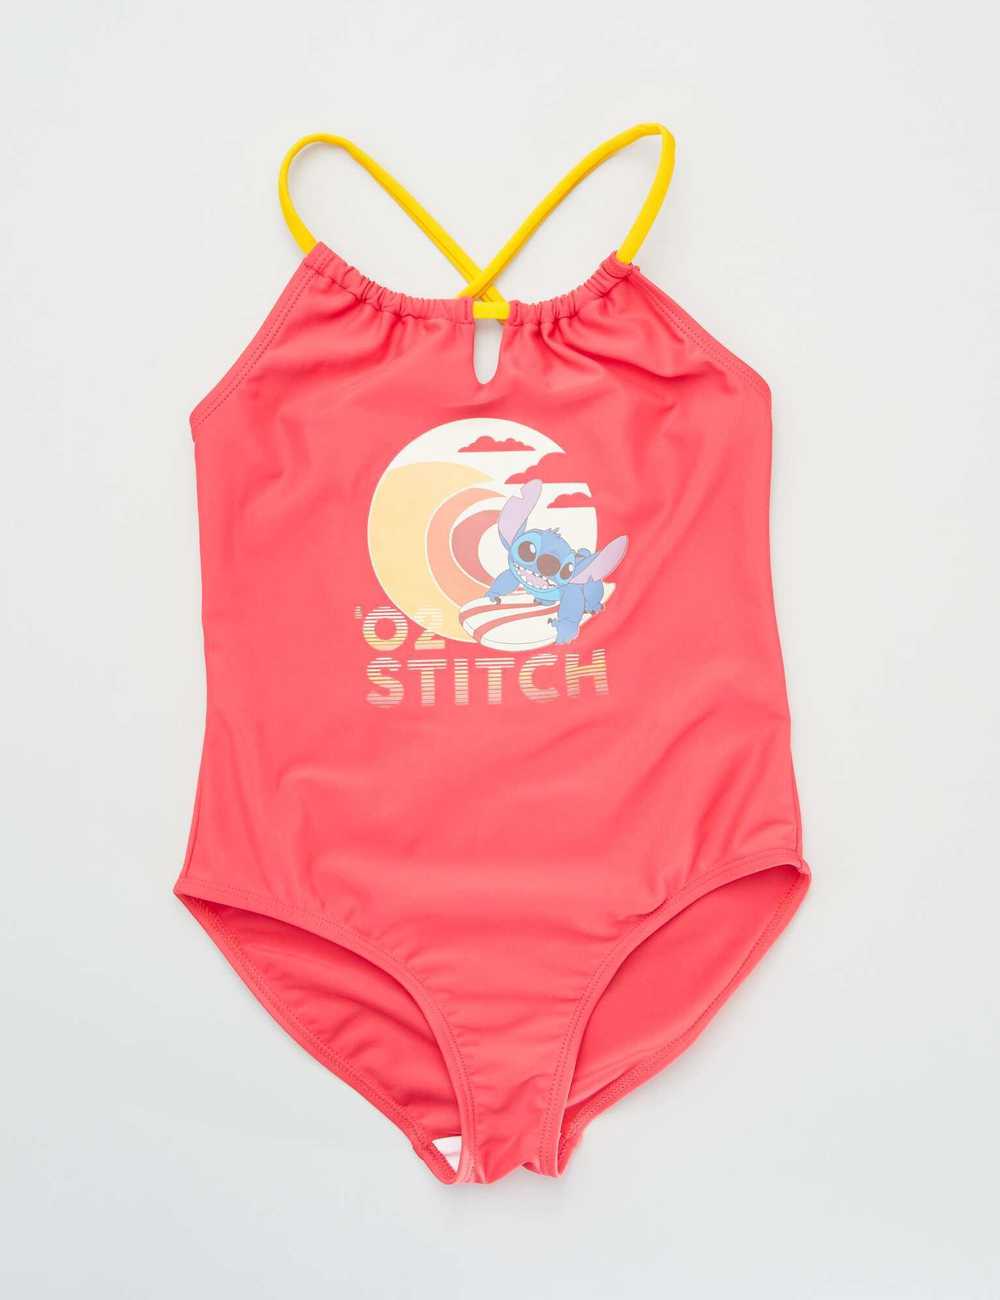 Buy Stitch 1-piece swimsuit Online in Dubai & the UAE|Kiabi